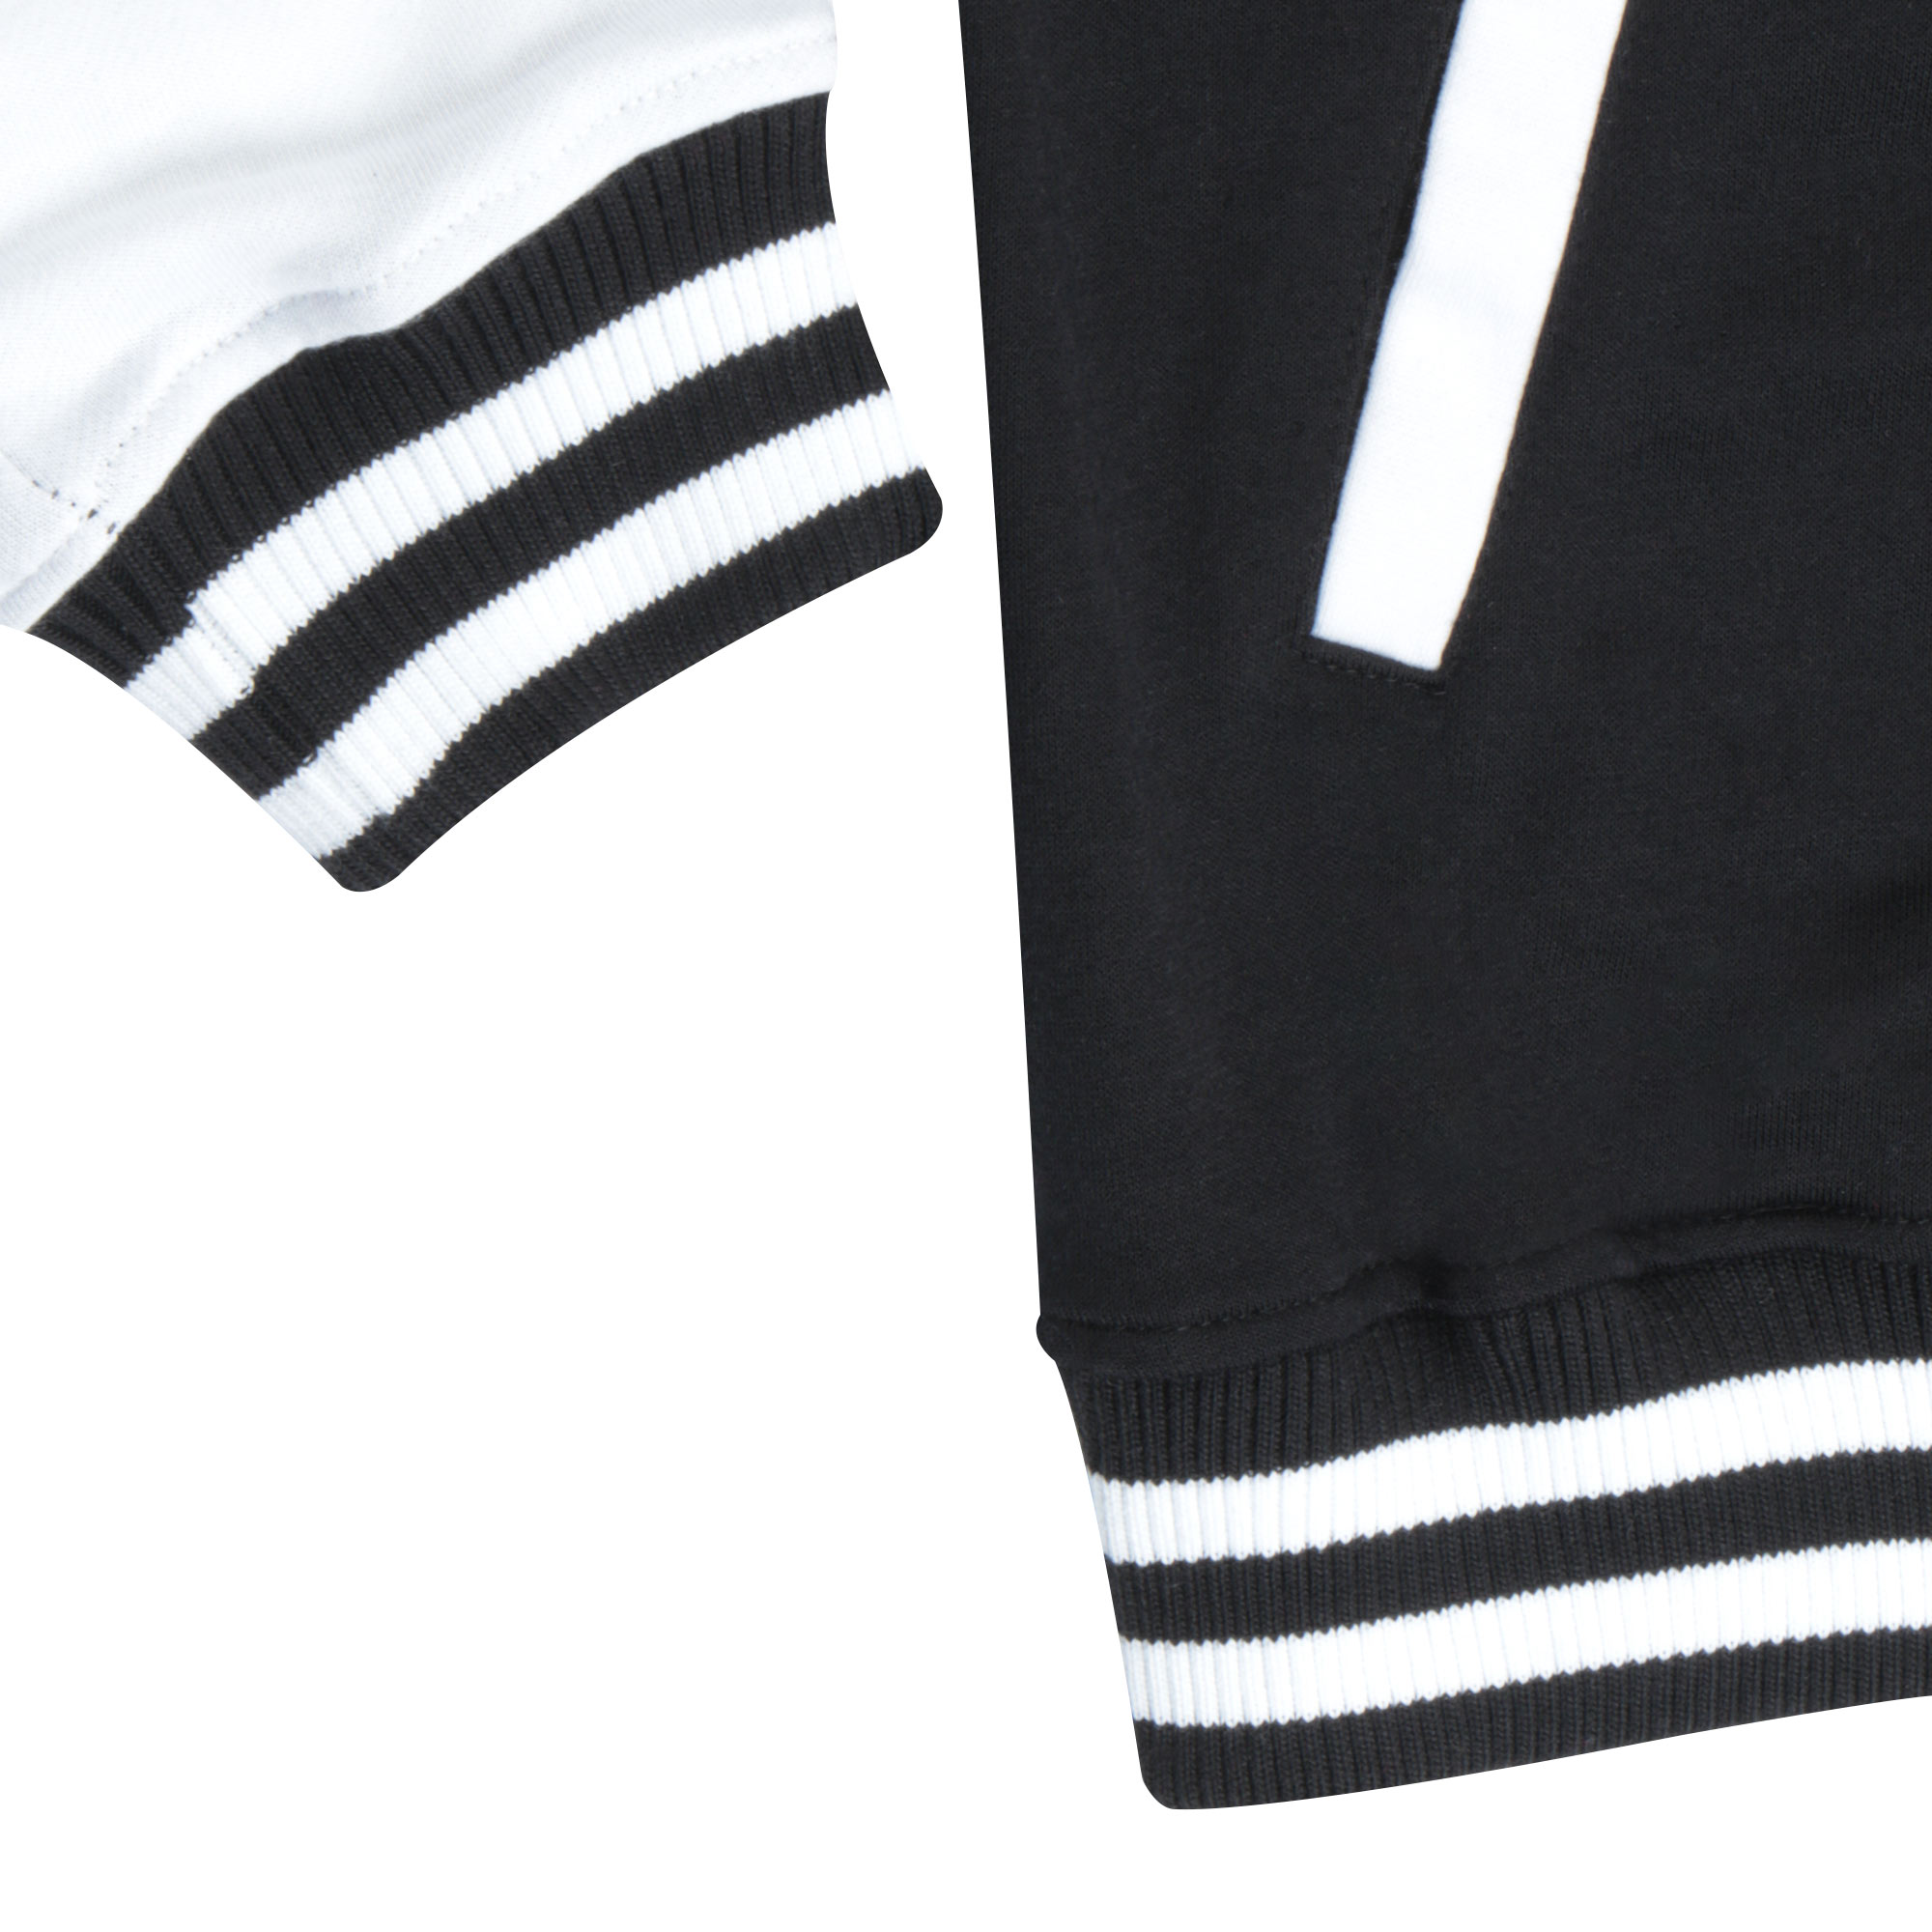 Бомбер Garment чёрный/белый M полиэстер, цвет черный, размер M - фото 2